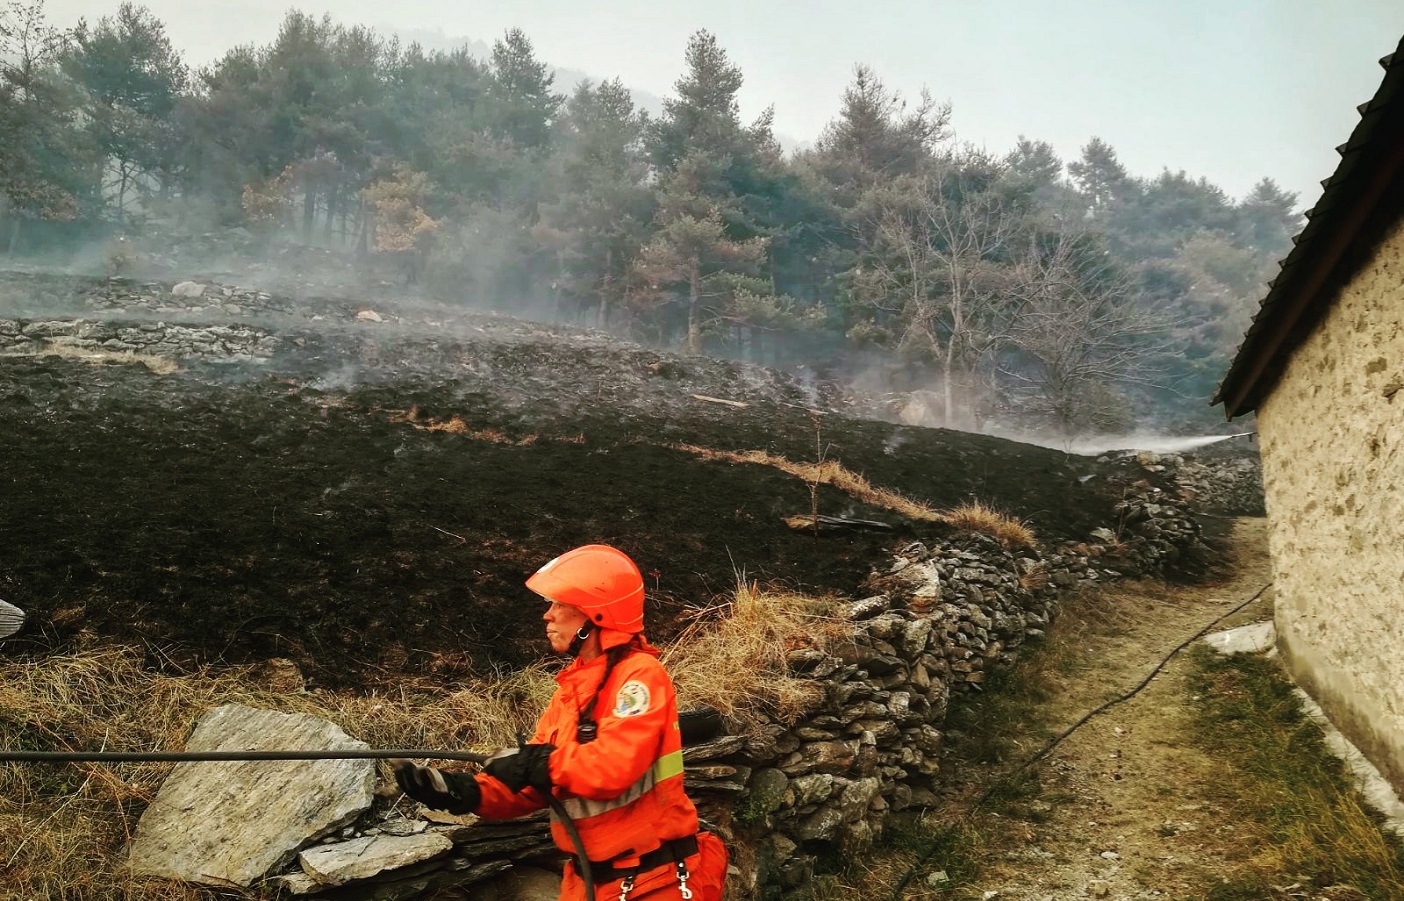 Incendi in Piemonte, prosegue l’emergenza: volontari e operatori CRI garantiscono assistenza no-stop